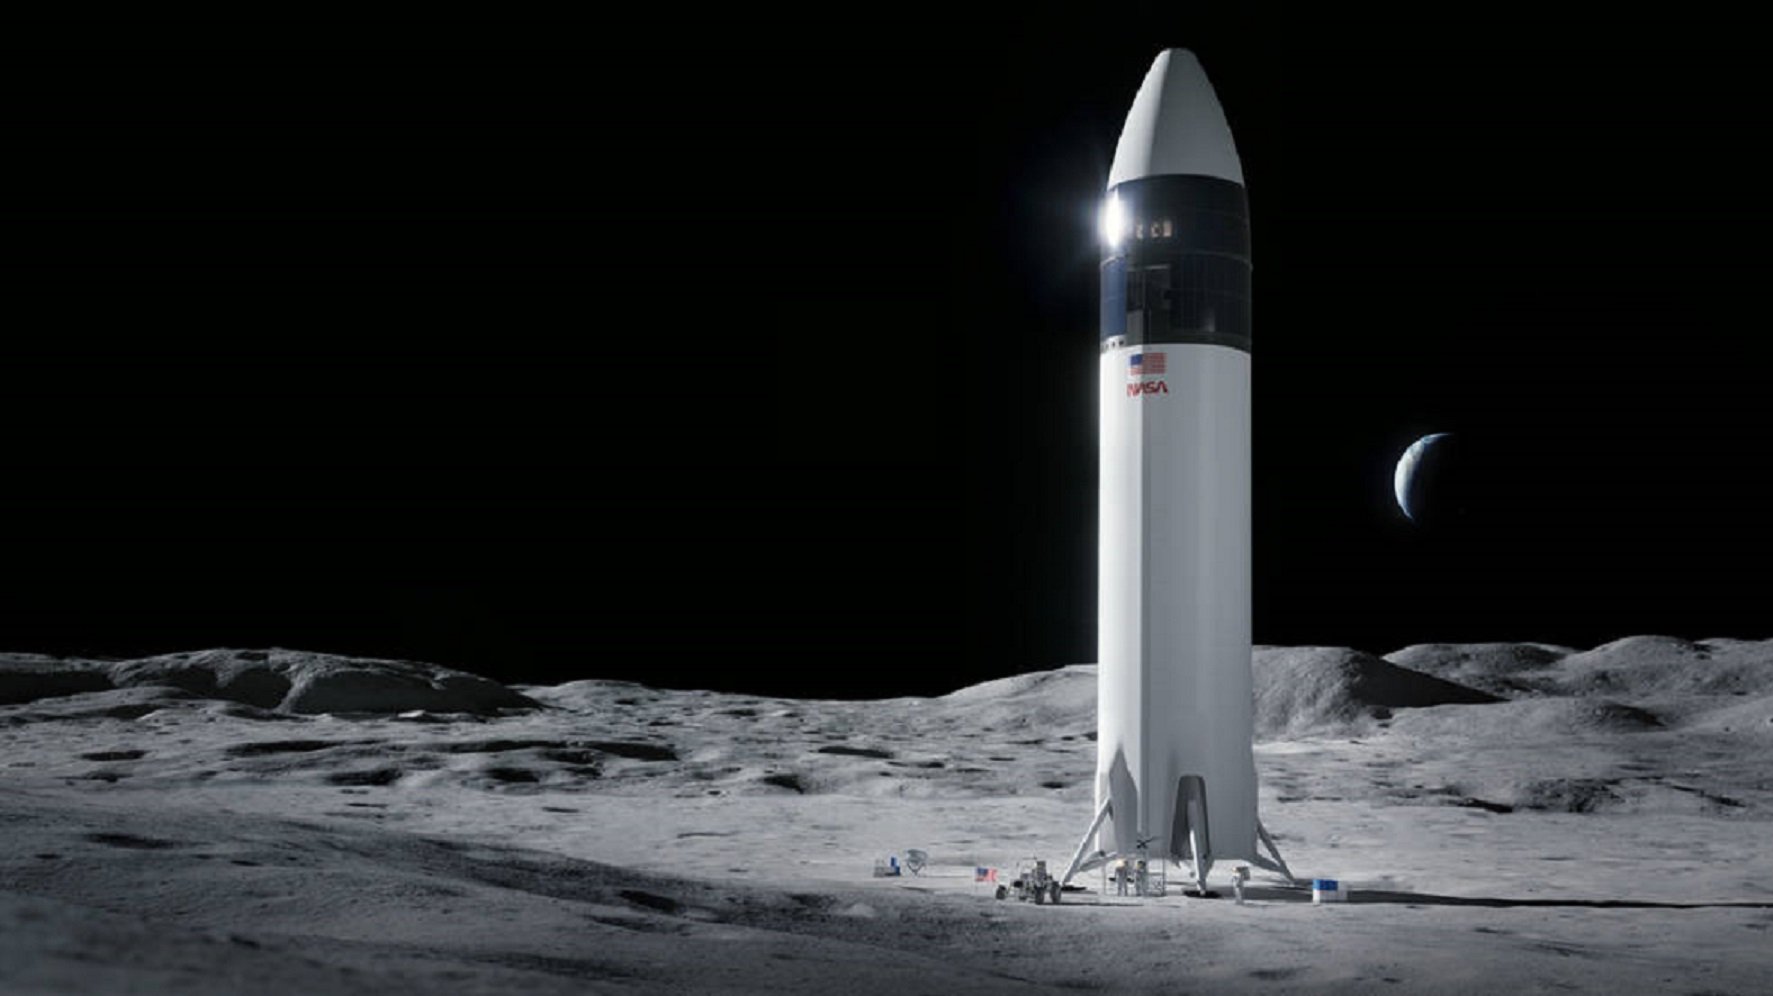 La NASA contrata Elon Musk para volver a llevar humanos a la luna